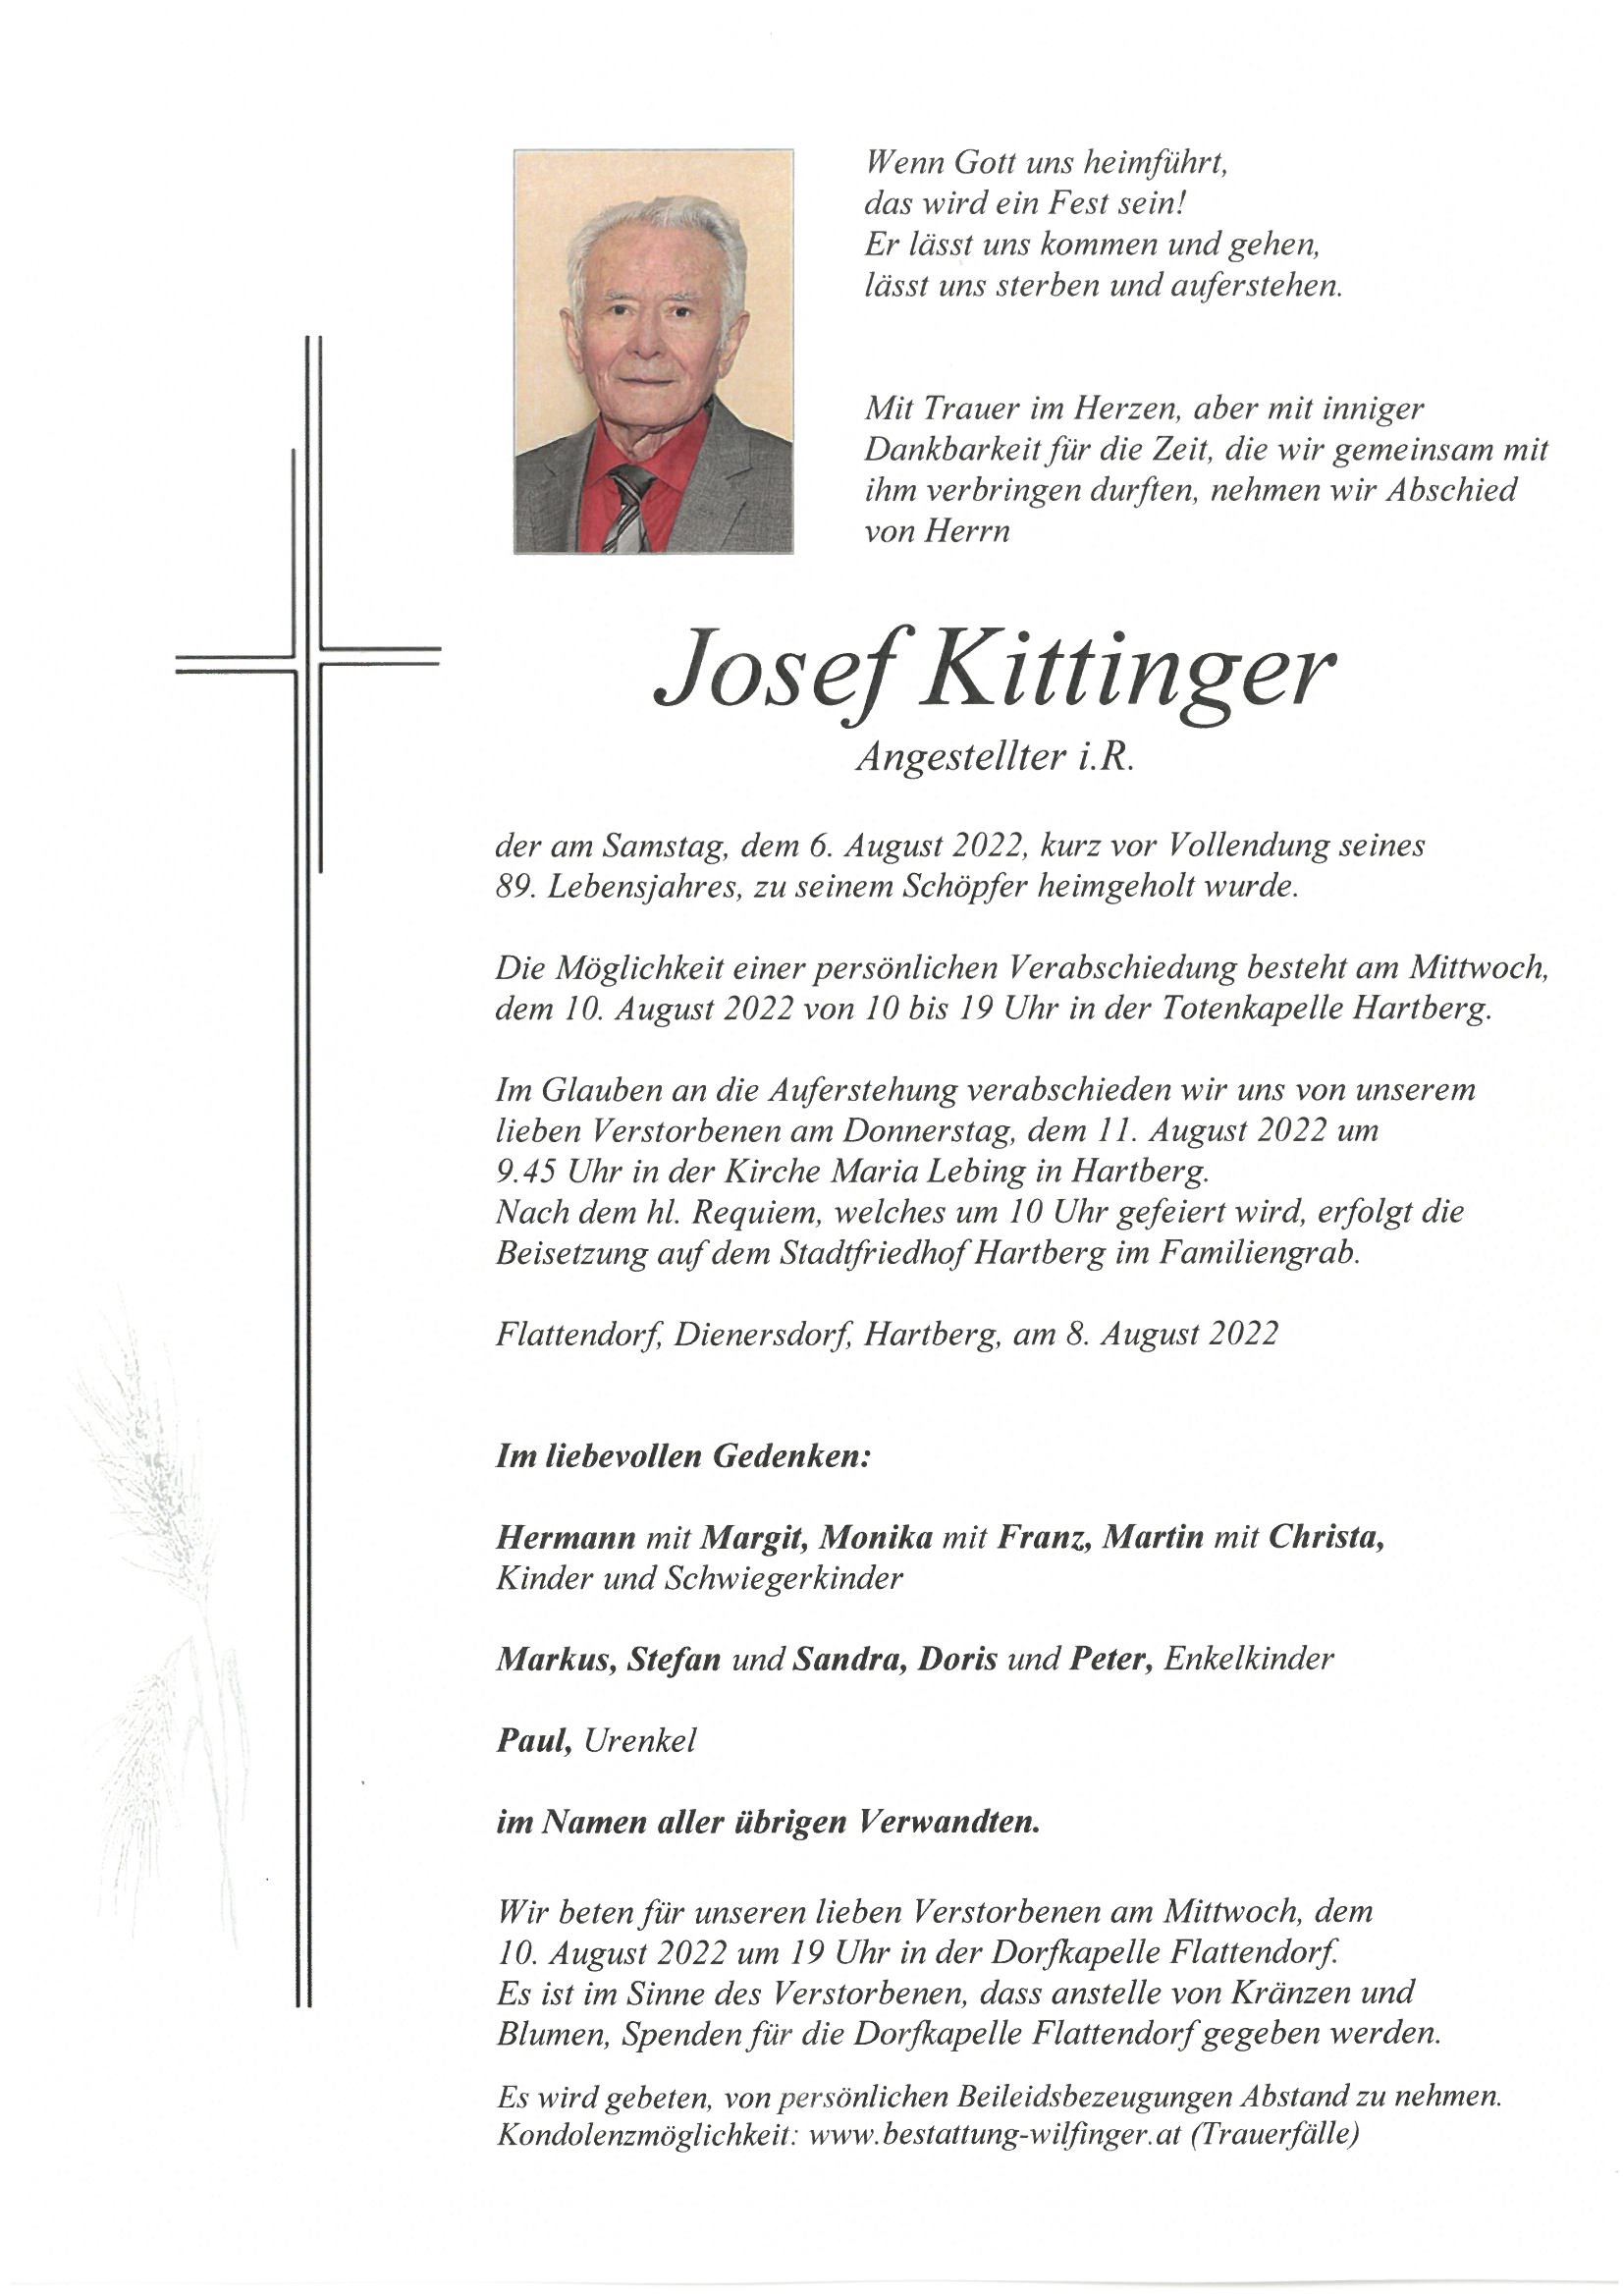 Josef Kittinger, Flattendorf